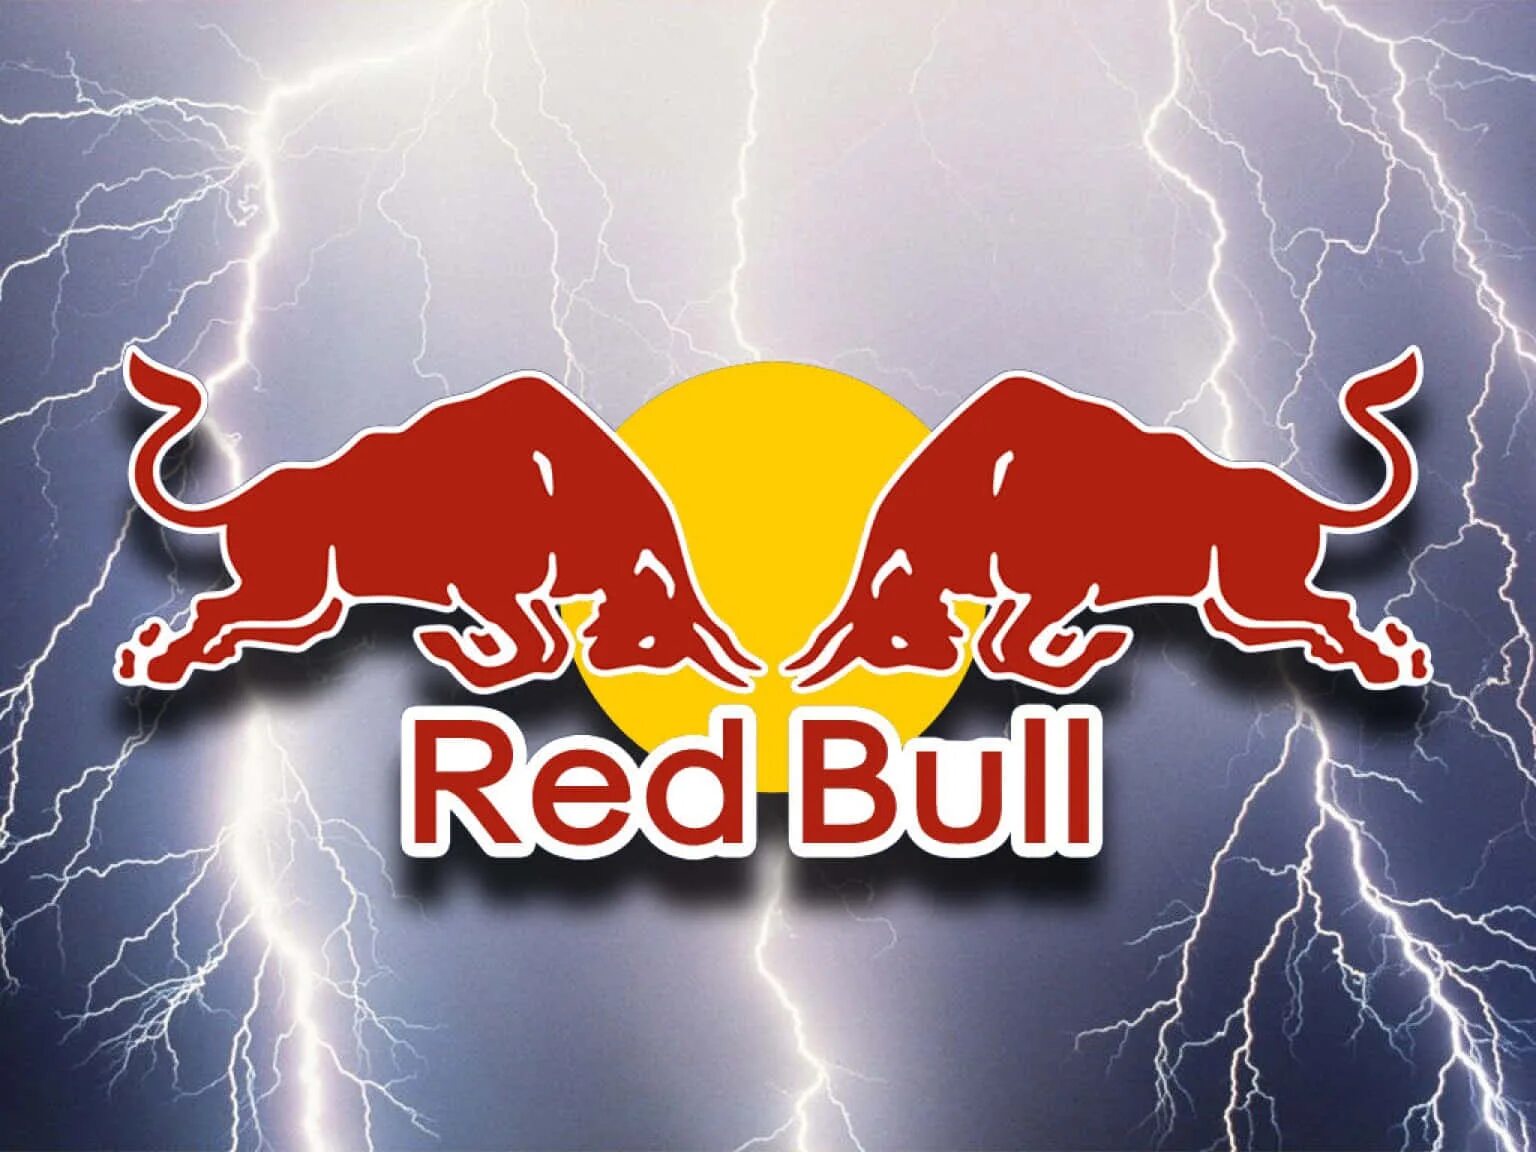 Ред буд. Red bull. Red bull эмблема. Red bull обои. Логотип Энергетика Red bull.